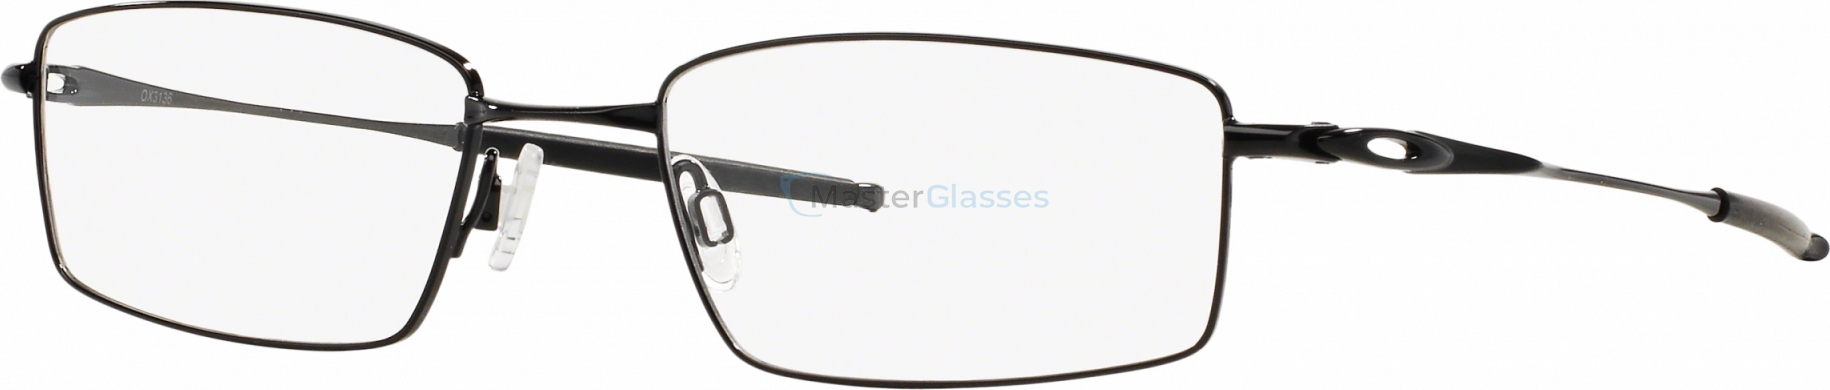 Oakley Top Spinner Presbyopia OX3136-02